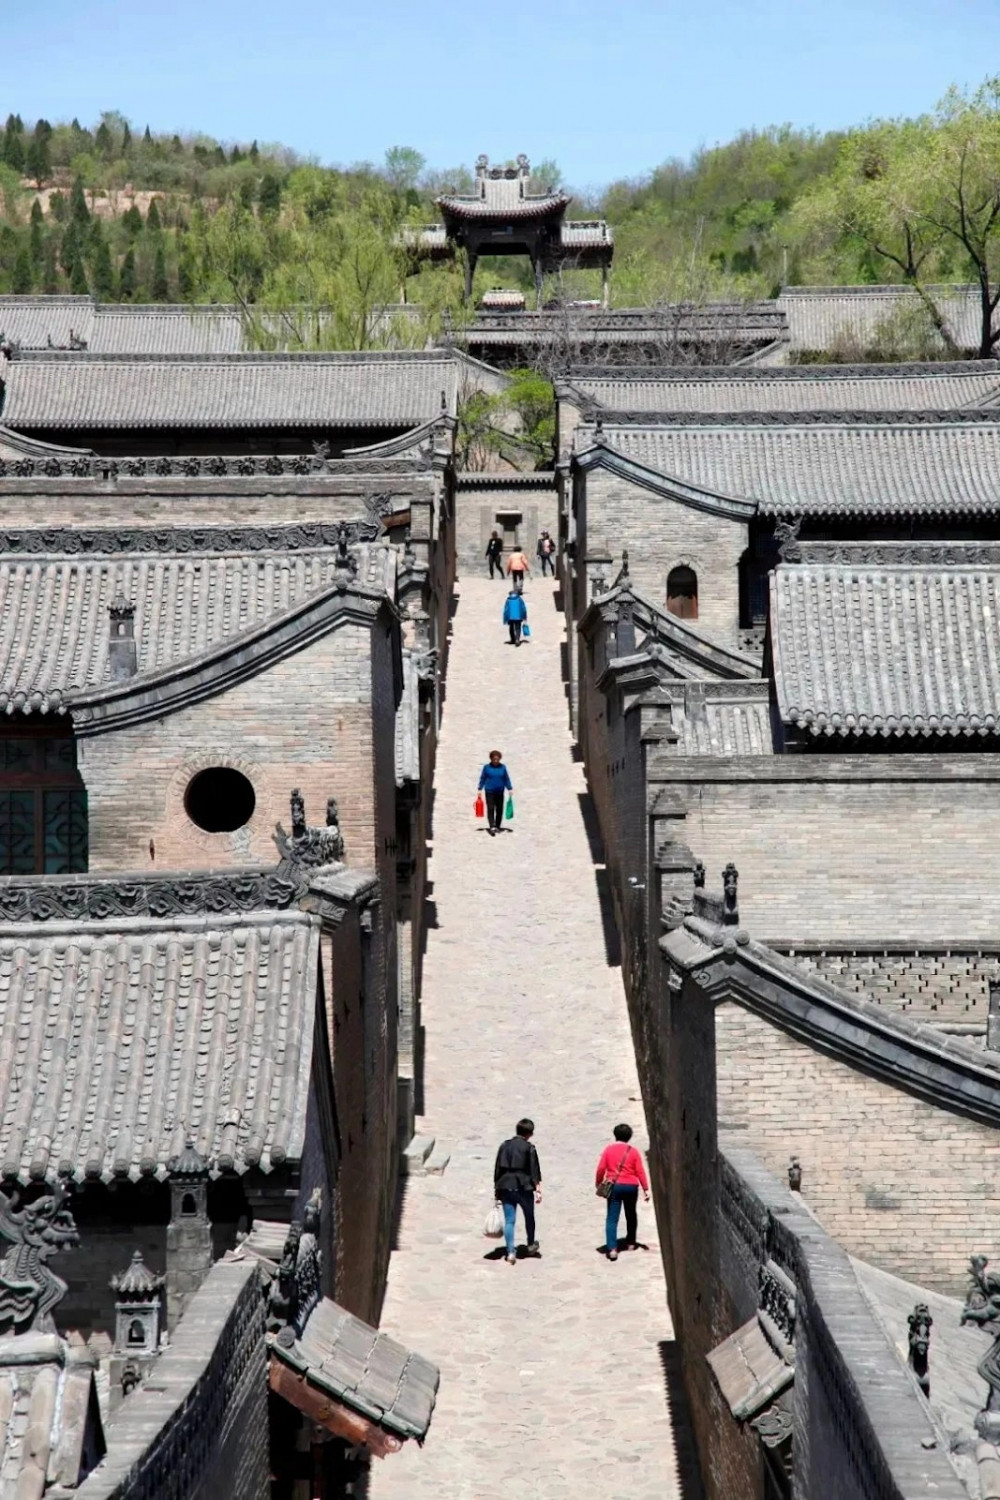 Bên trong biệt phủ lớn nhất Trung Quốc: Gia tộc phồn vinh nhất thời nhà Thanh mất 300 năm xây dựng, bề thế ngang Tử Cấm Thành